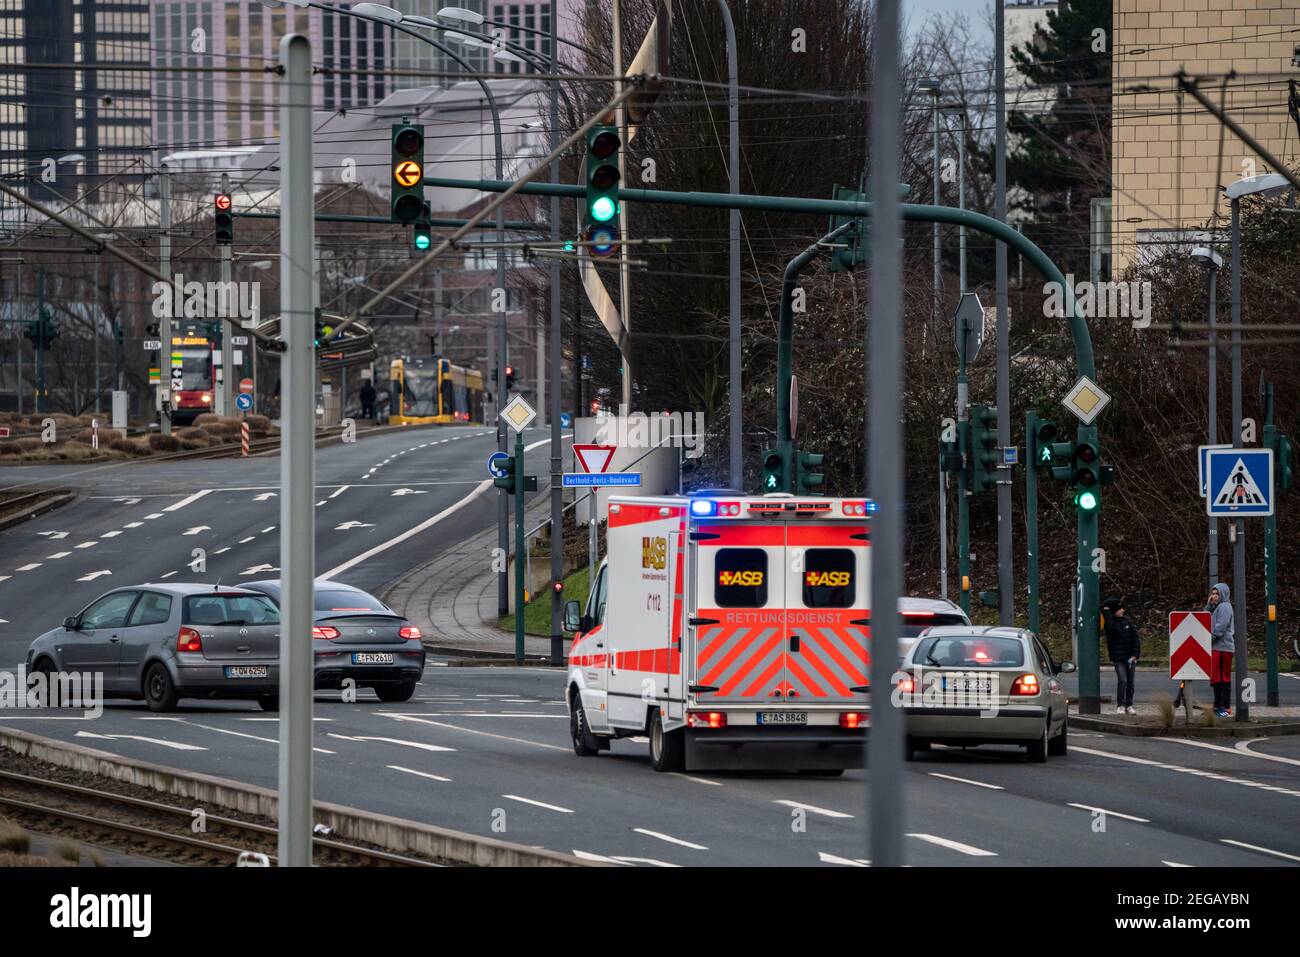 Krankenwagen im Einsatz mit Blaulicht und Sirene, an einer Ampelkreuzung, Fahrzeuge Platz für den Rettungswagen, Essen, NRW, Deutschland Stockfoto